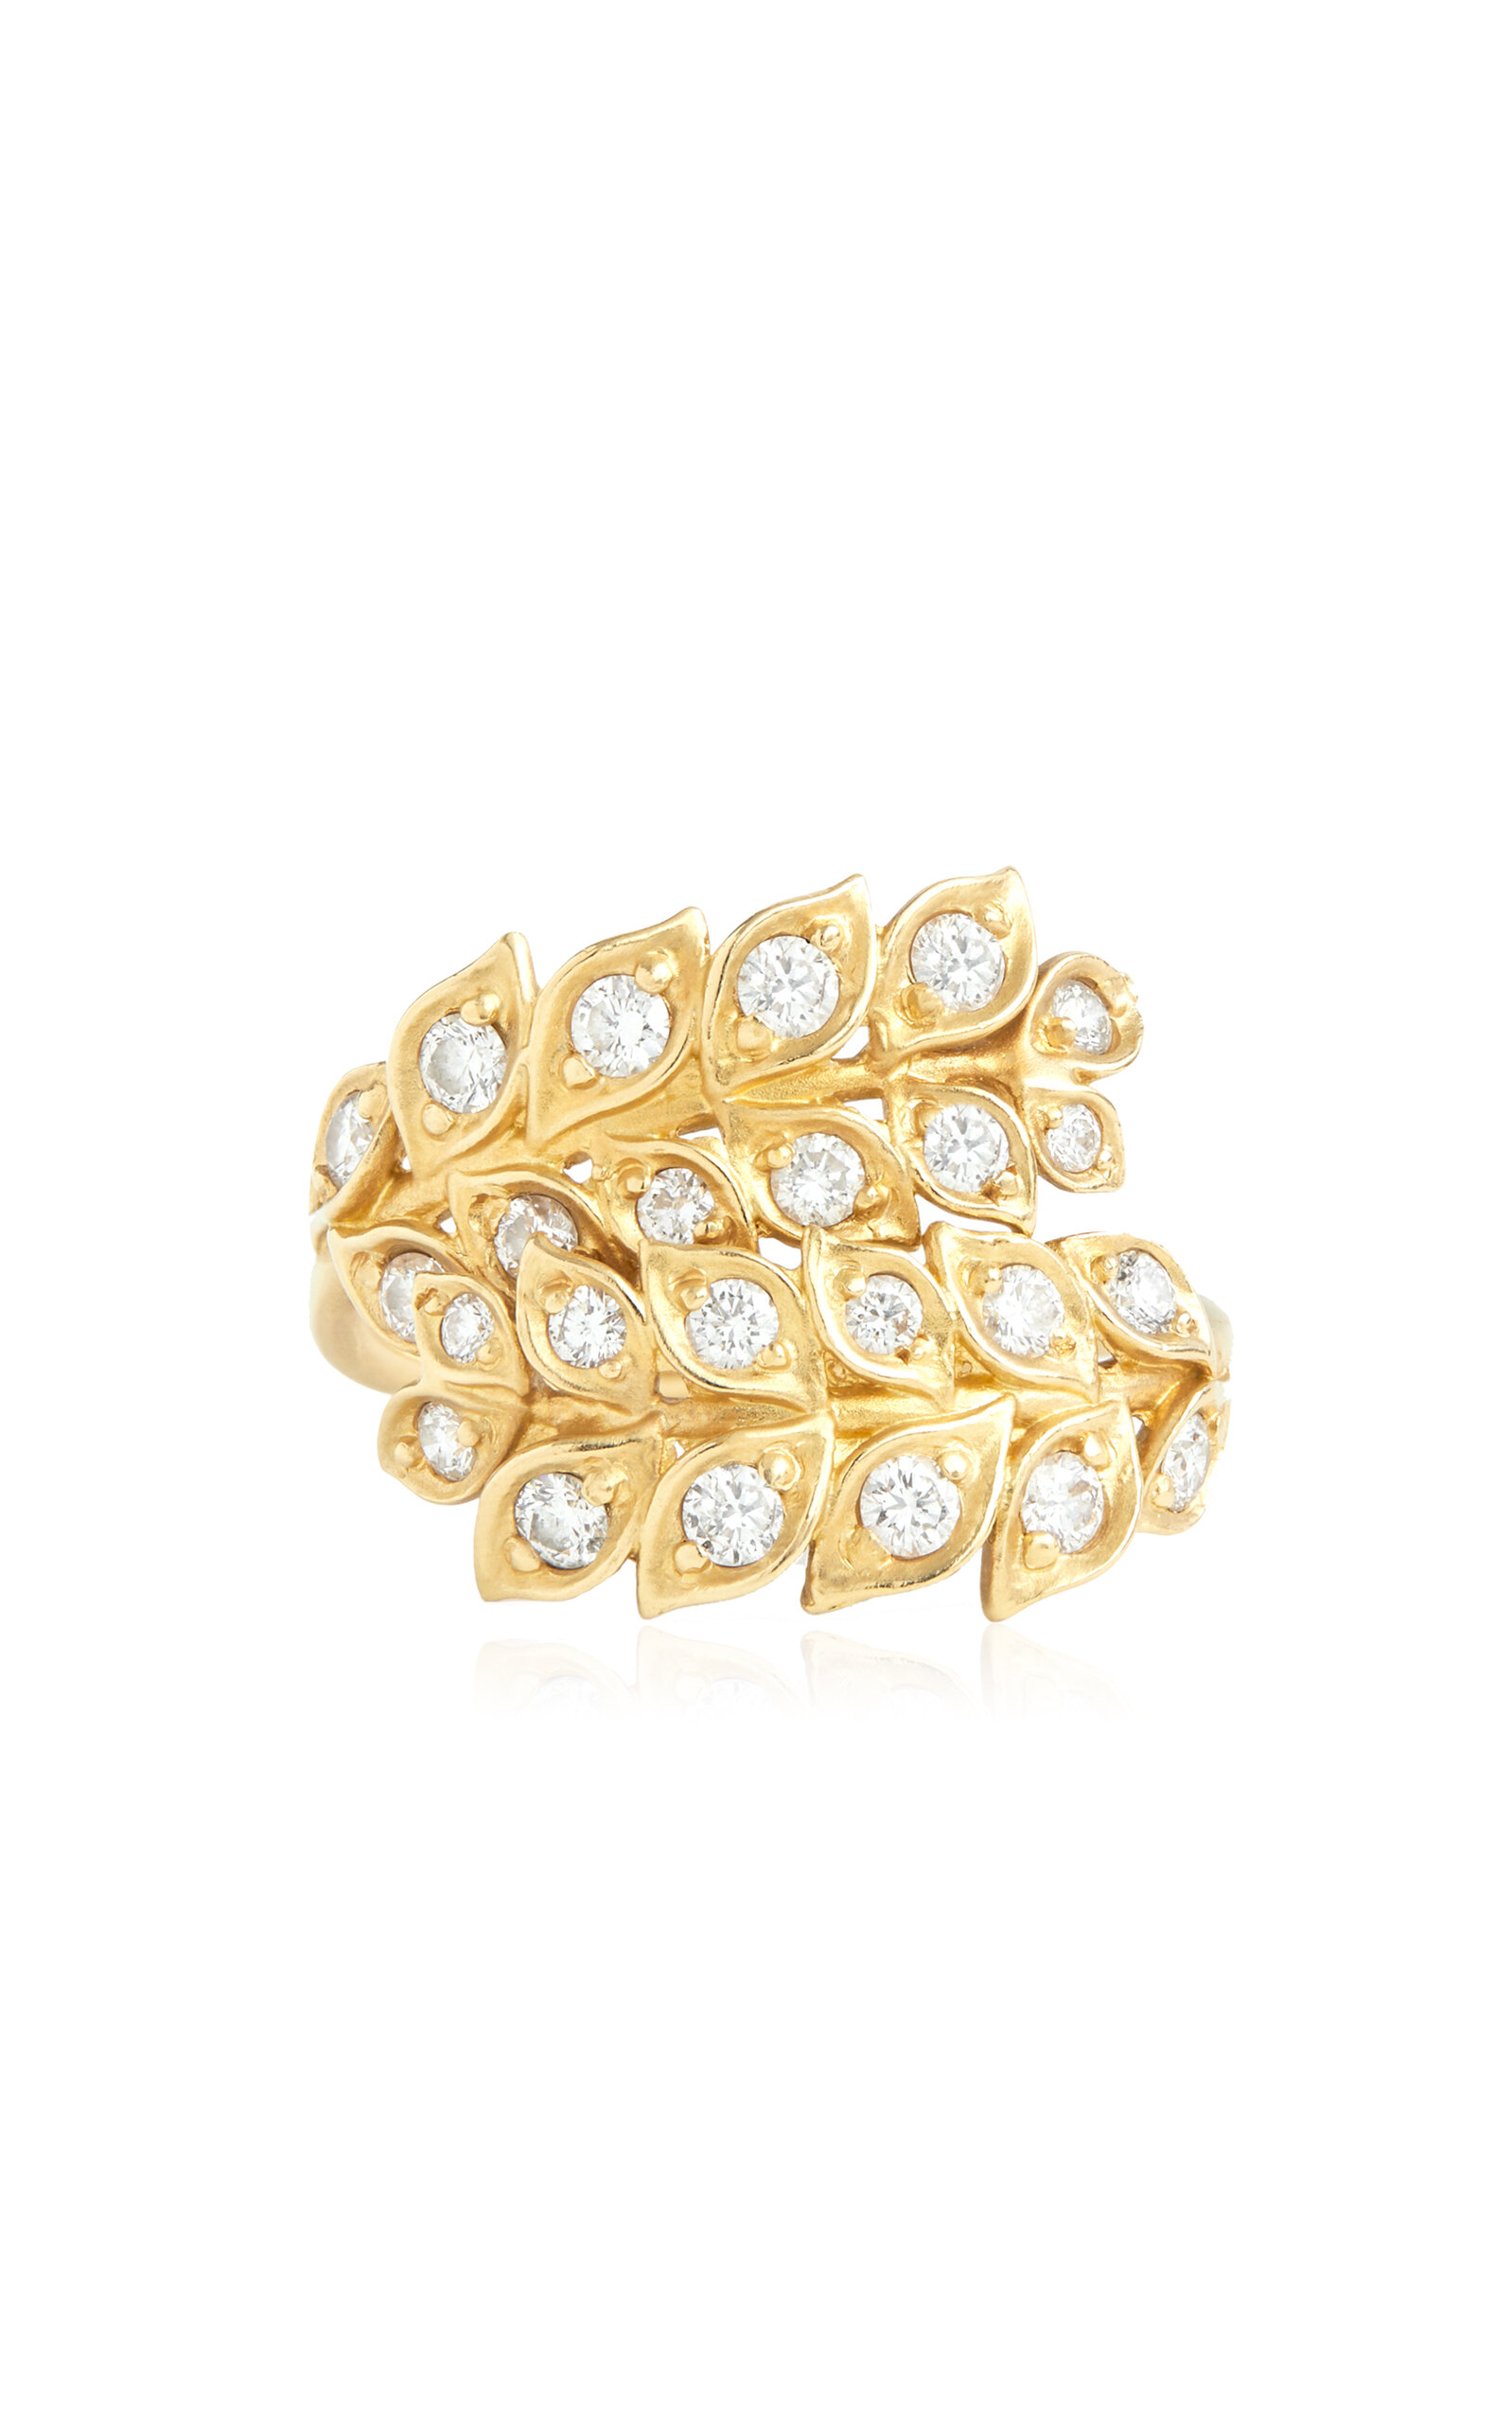 Jamie Wolf 18k Yellow Gold Diamond Ring